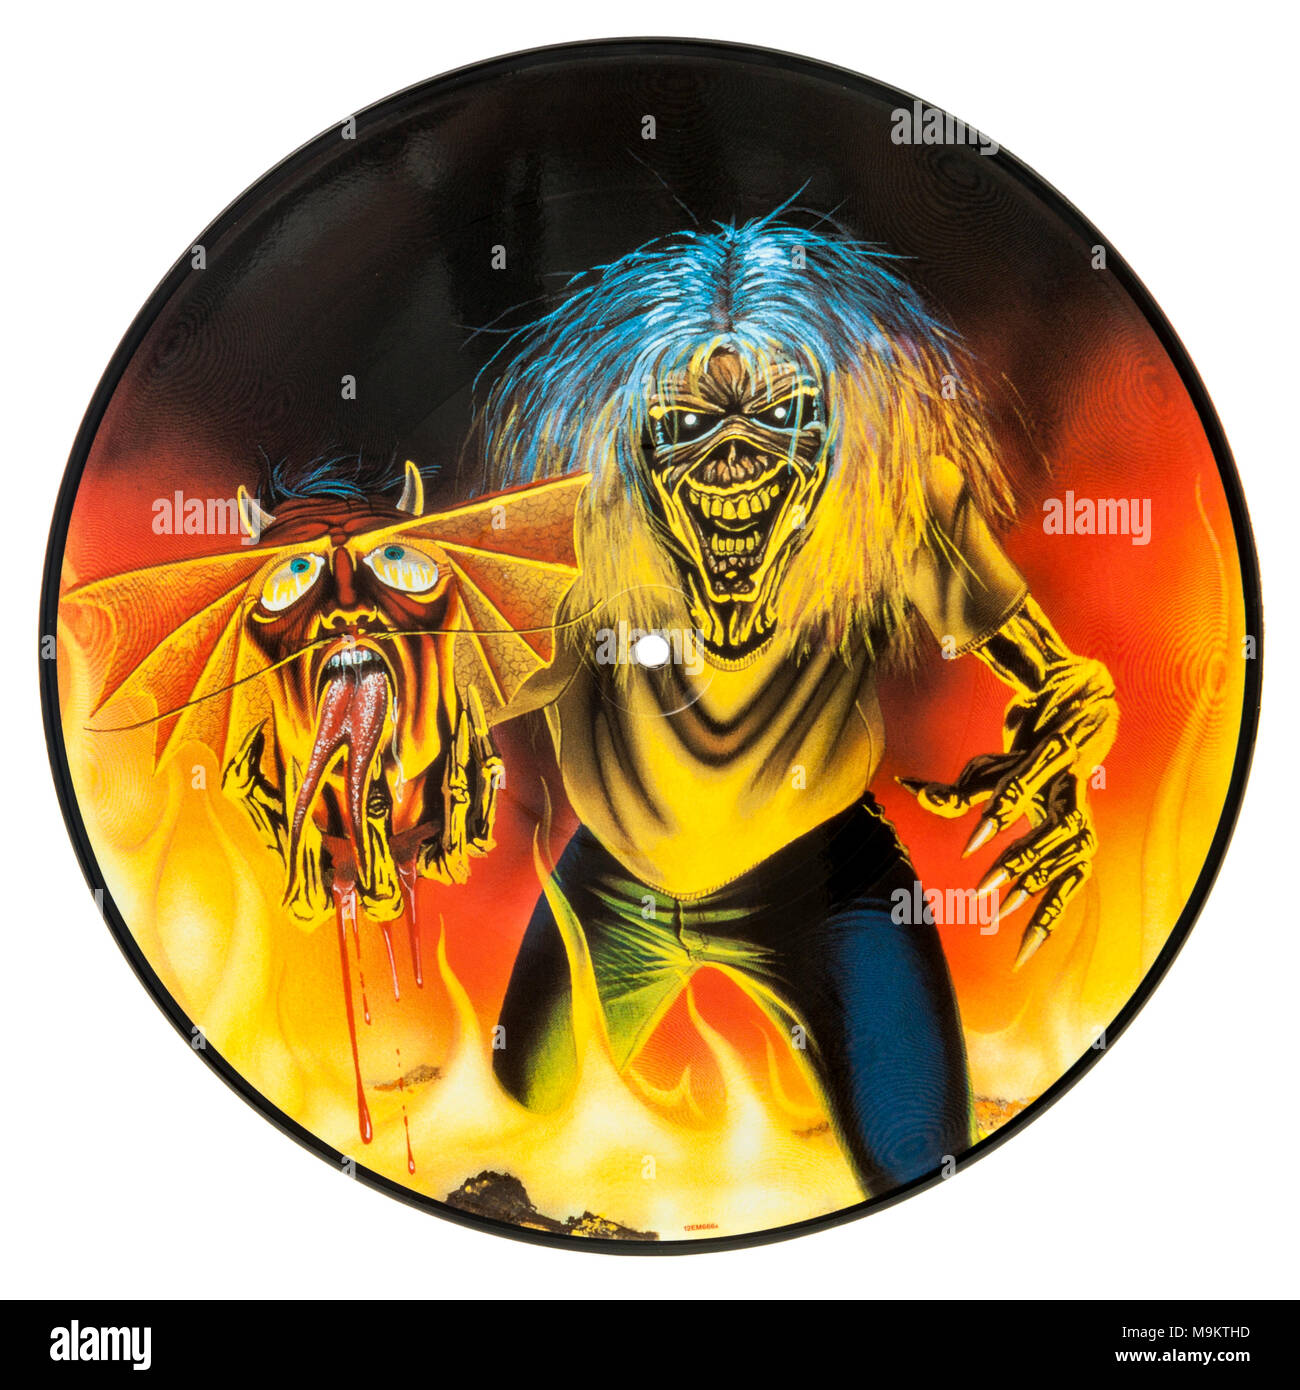 2005 Limited Edition Picture Disc (disco in vinile) dalla British heavy metal band Iron Maiden (il numero della bestia) Foto Stock